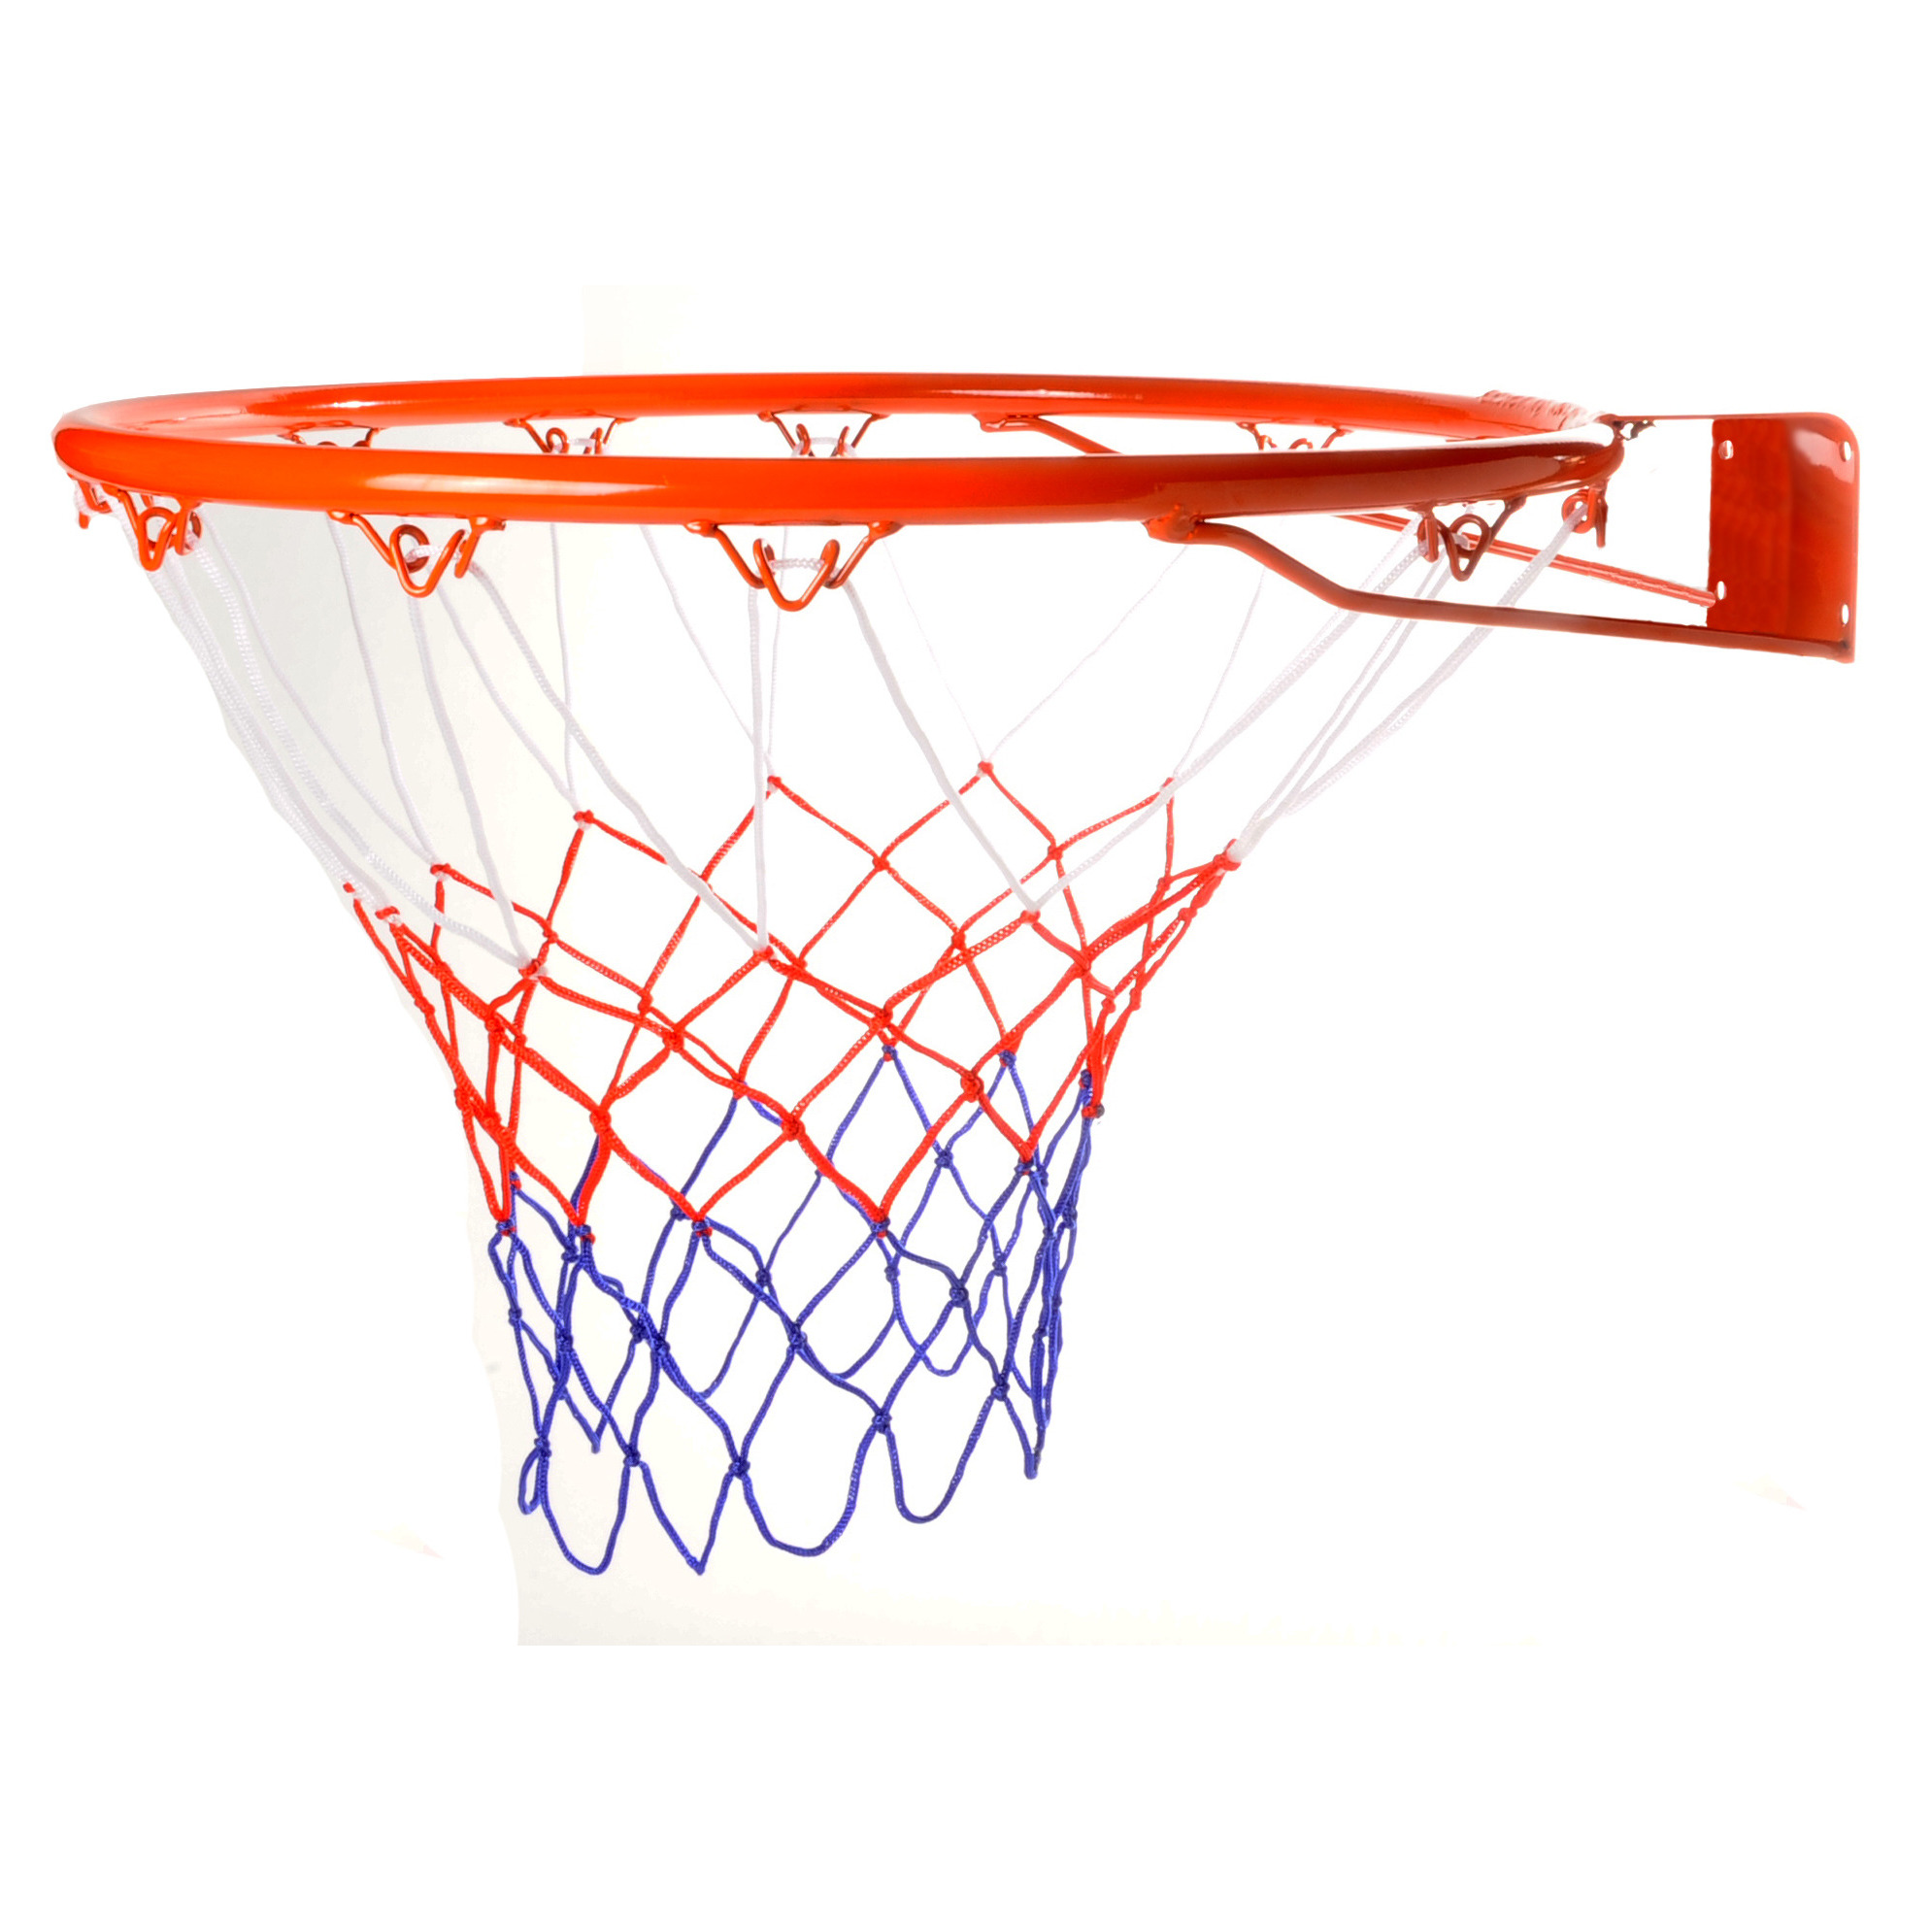 Basketbal ring met net